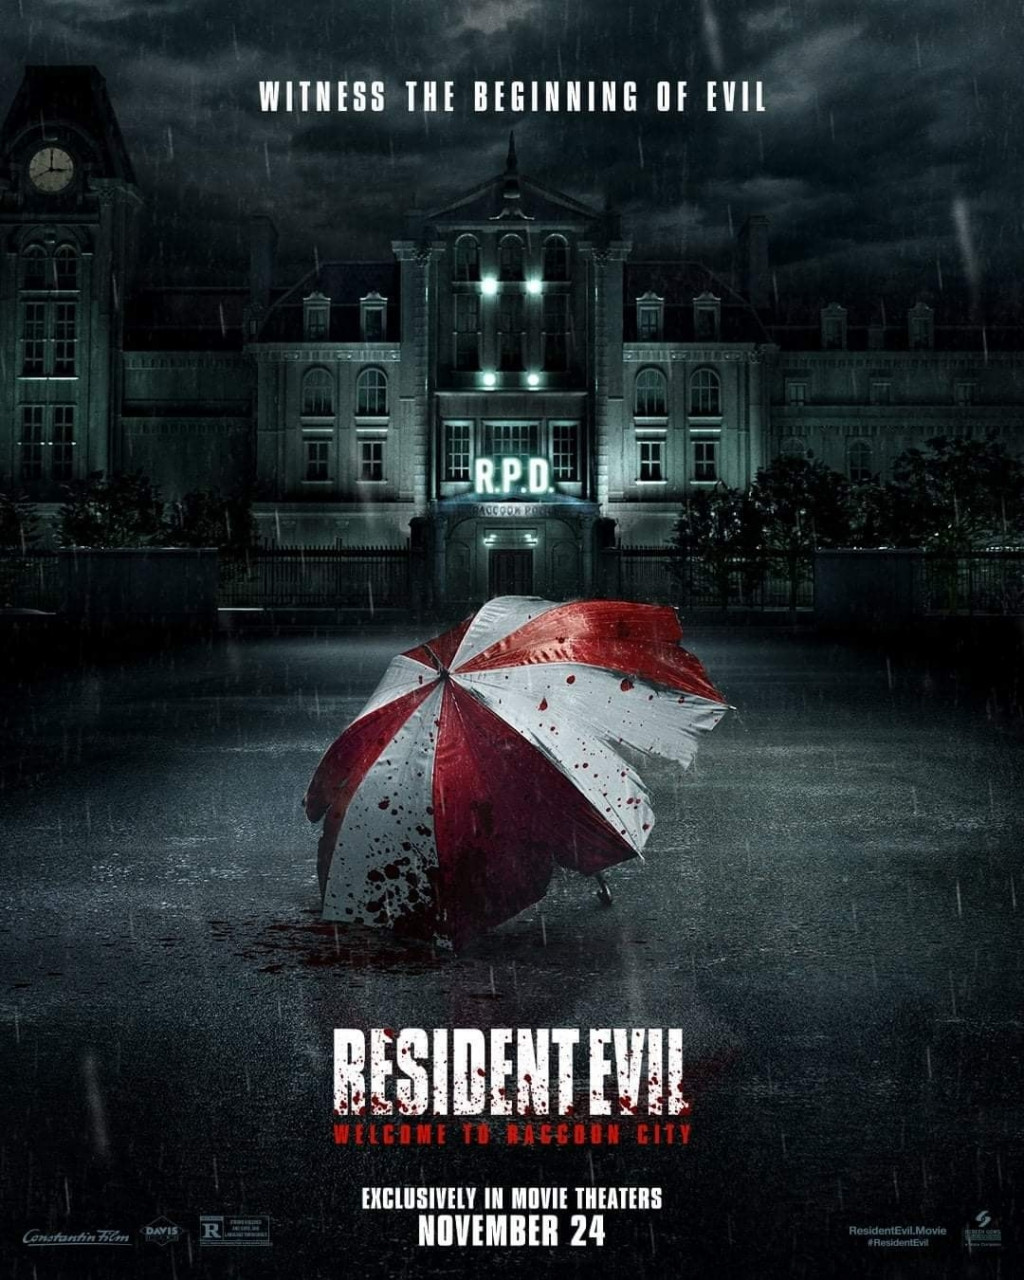 Phim mới của 'Resident Evil' bị chê kỹ xảo 'dở ẹc', xứng đáng phim hạng B ngay từ trailer